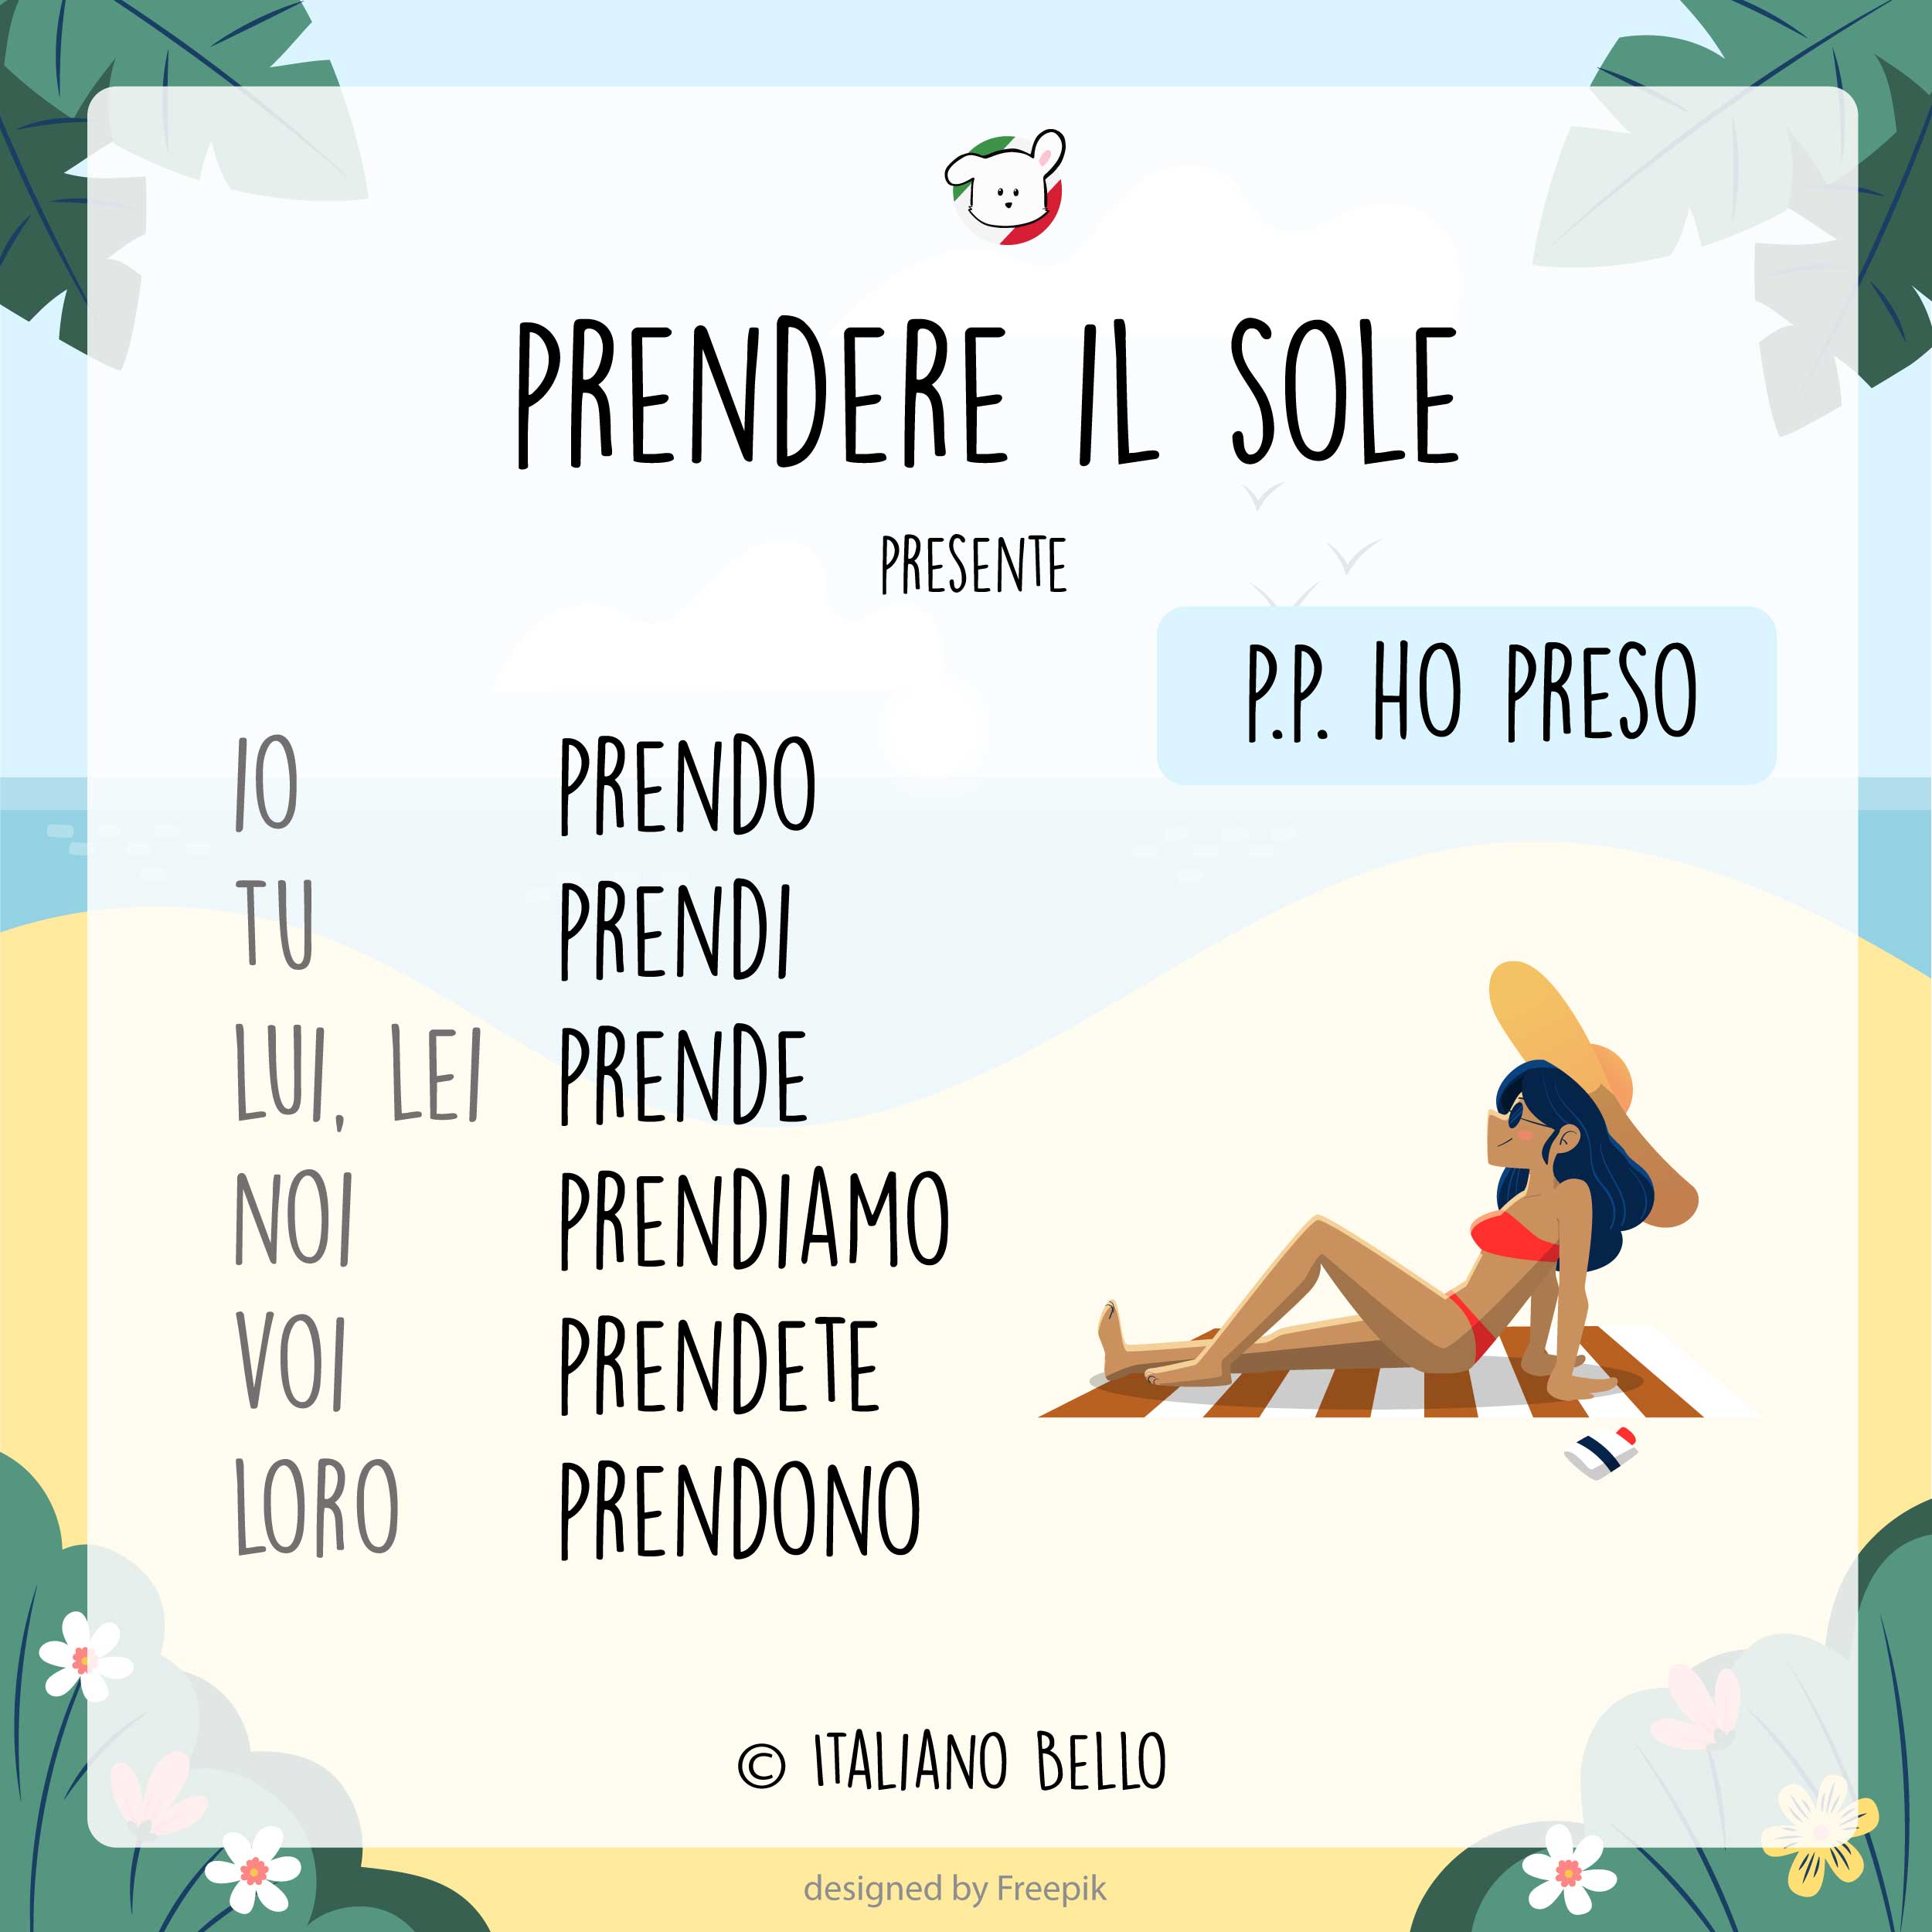 prendere il sole | Italian Picture Dictionary